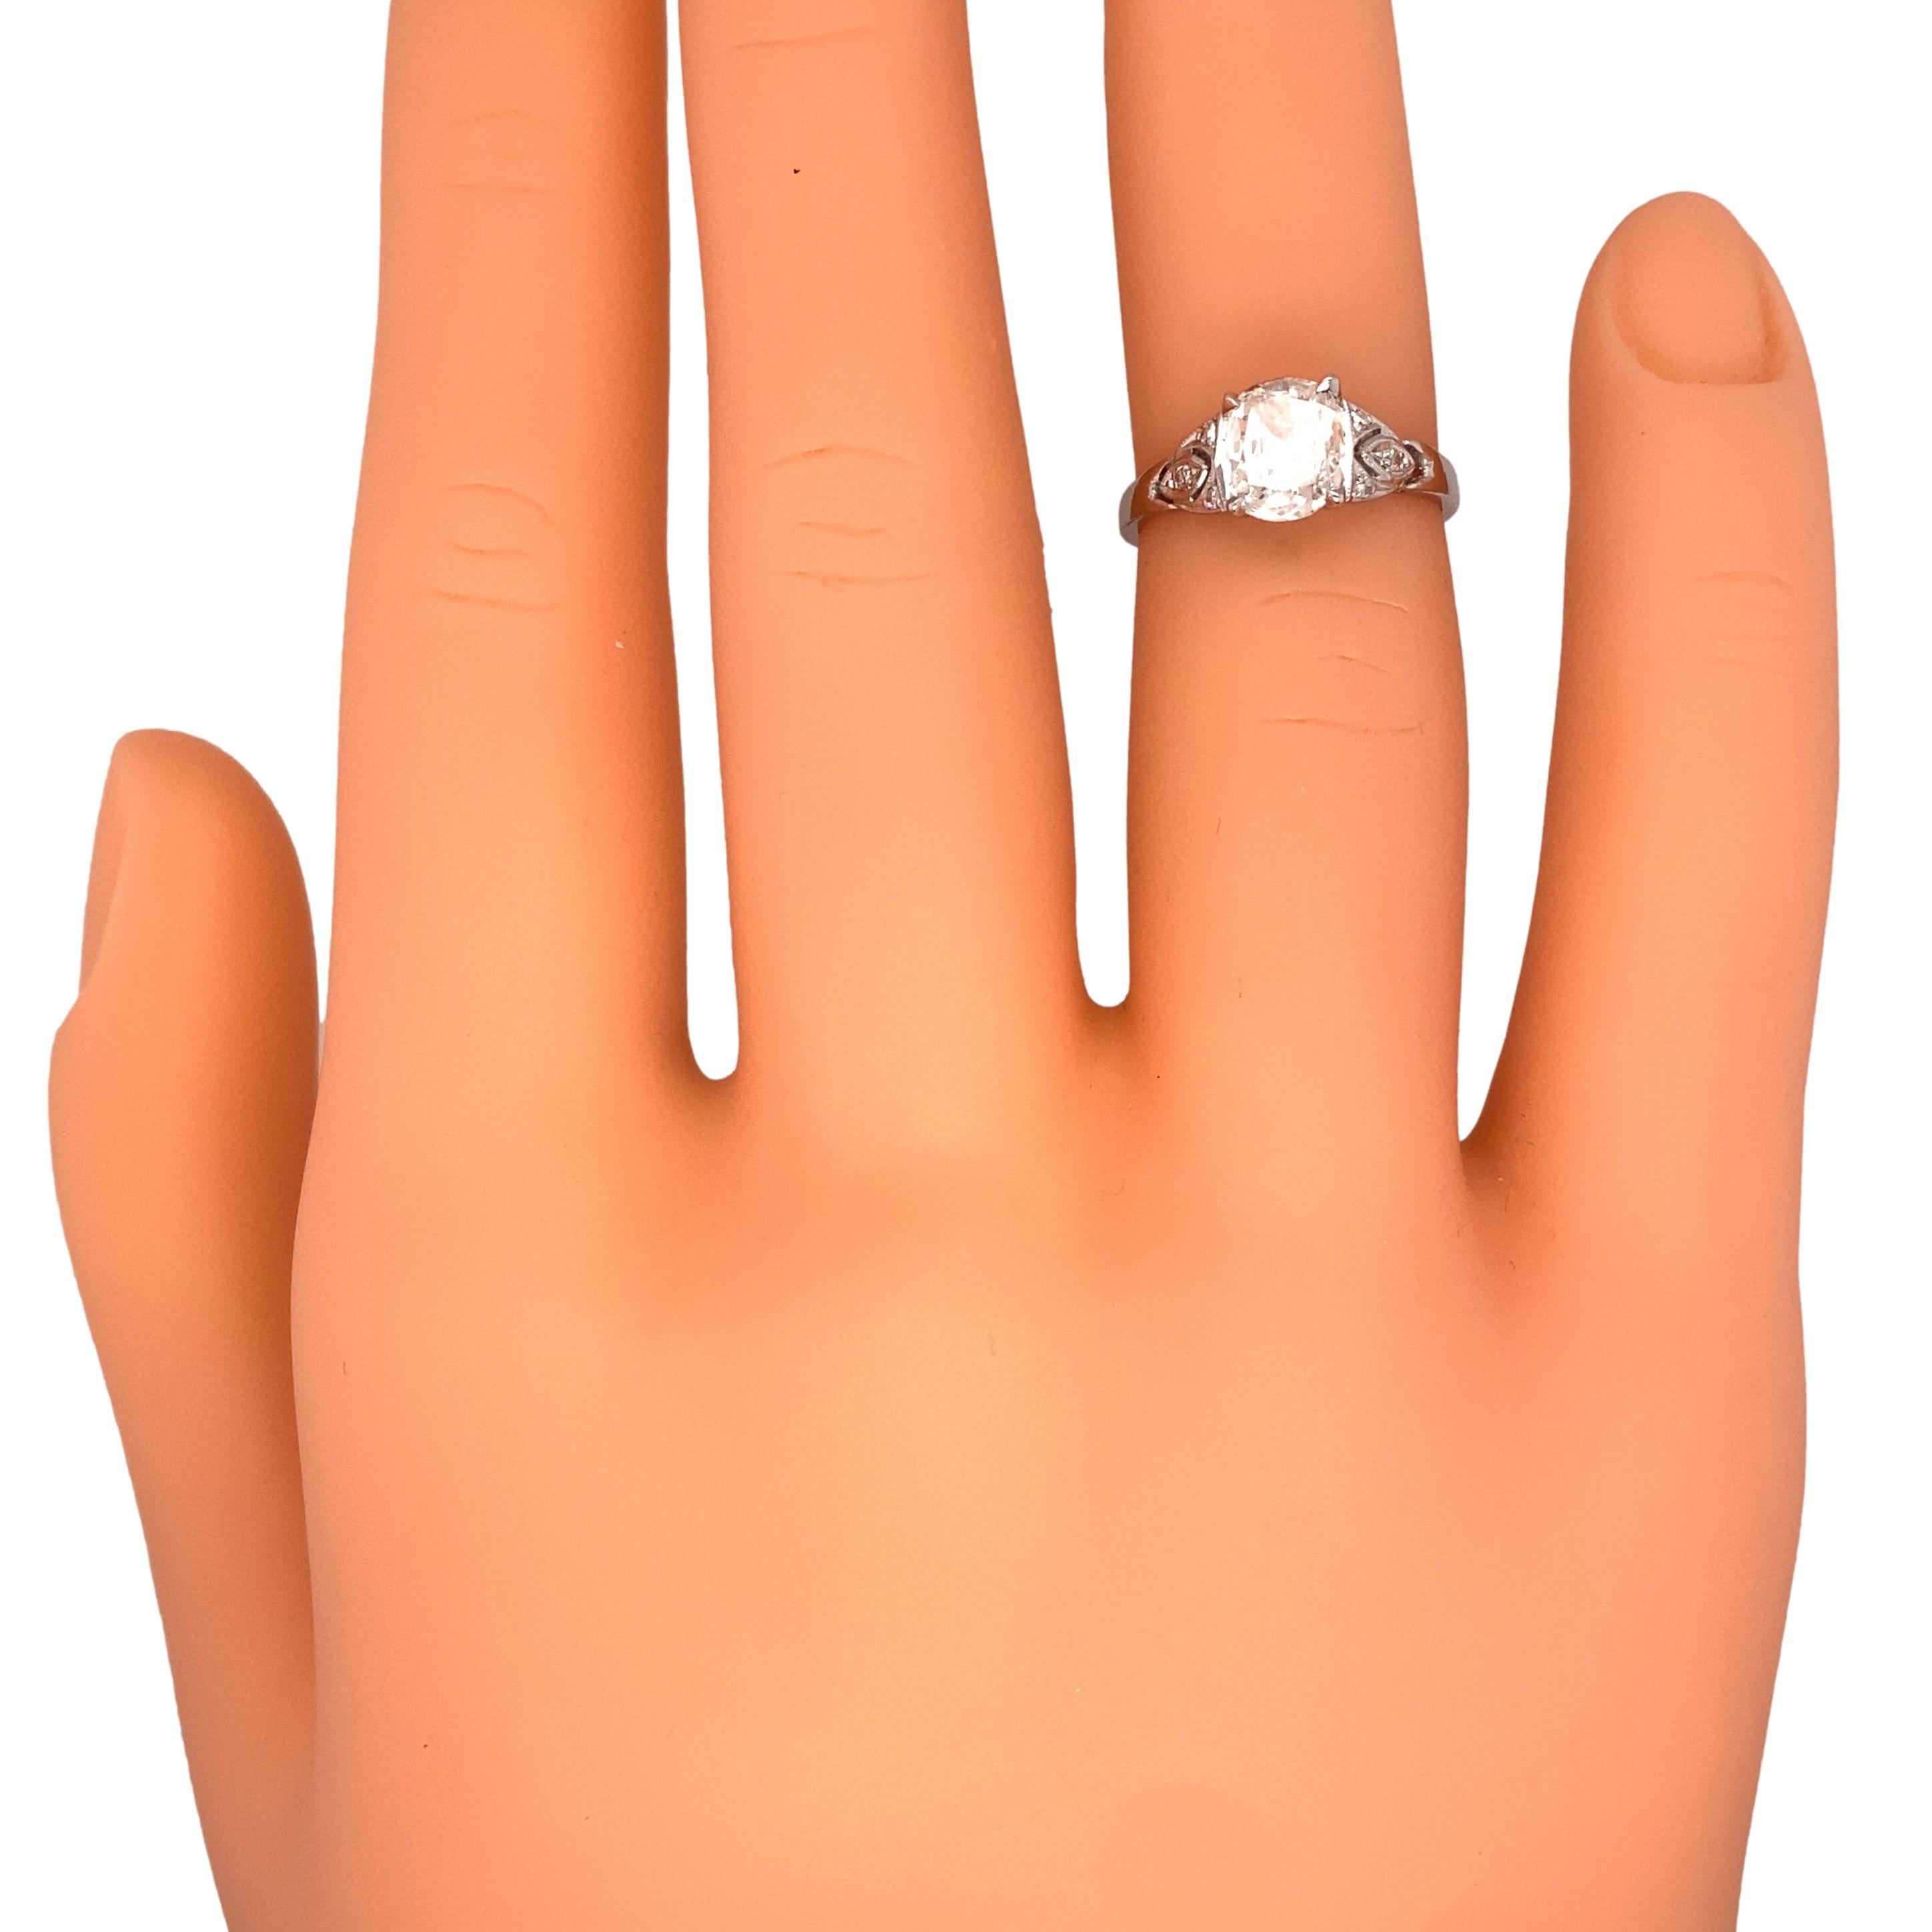 Circa 1920s Art Deco 1.0 Carat Tota Diamond Engagement Ring in Platinum 1